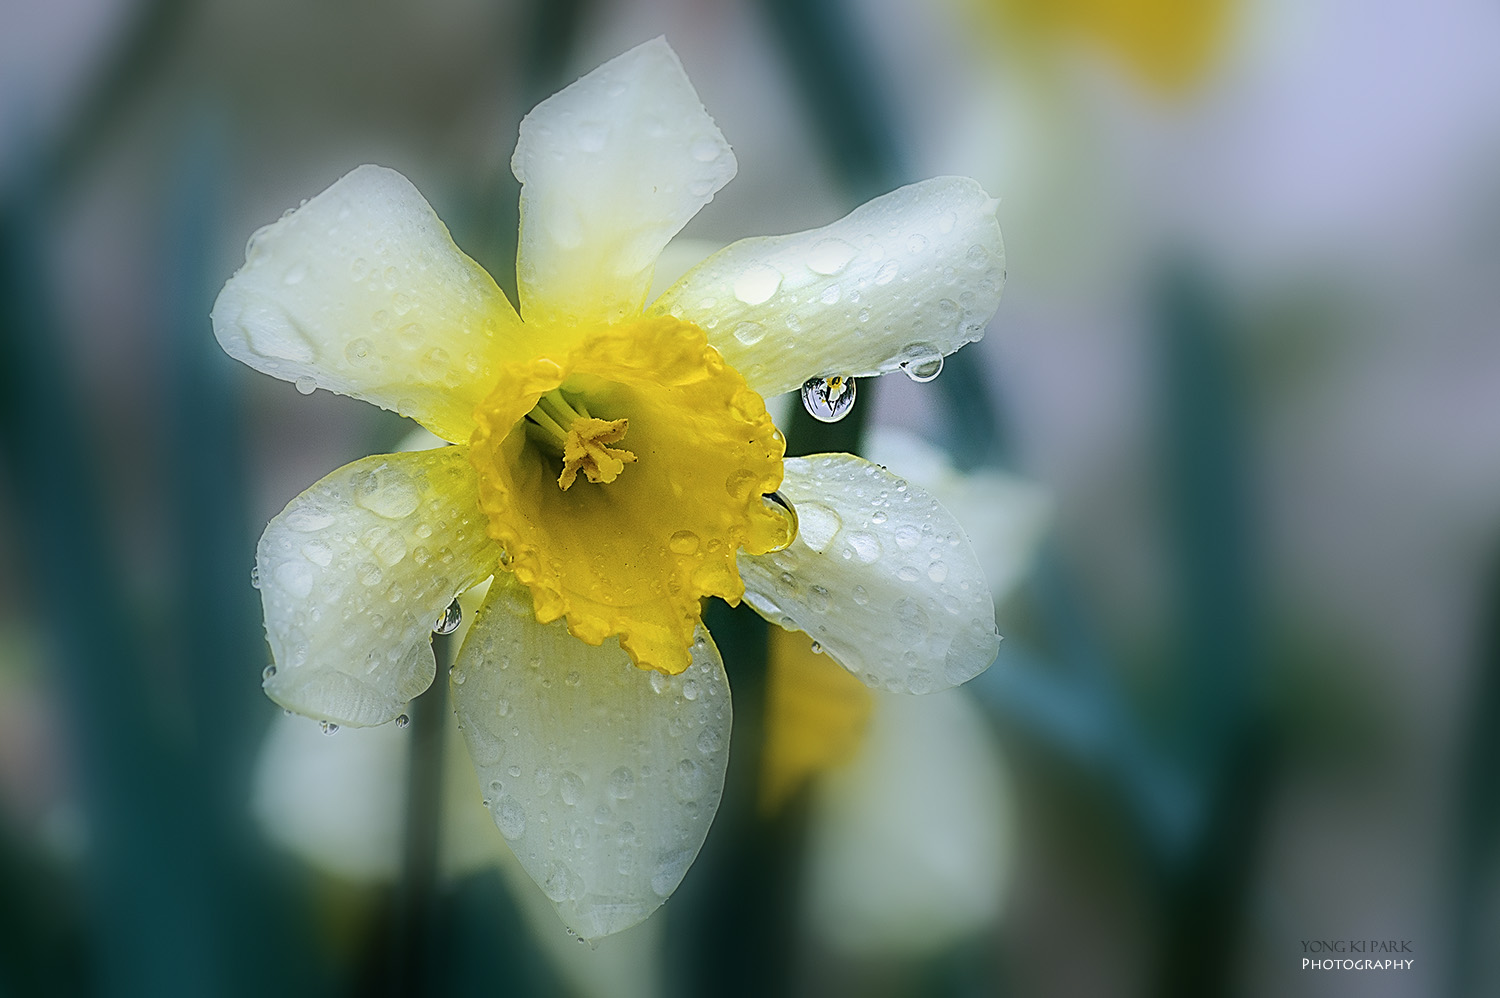 수선화의 영어 이름은 데포딜(daffodil)이라고 하지만 학명인 나르시서스(Narcissus)로도 통한다. 그래서 이 꽃을 보면 위에 소개한 노래가 떠올라 낭만적인 느낌이 들기도 하지만 어딘가 가슴 한 구석이 조금 아린 듯 하다. 그리스 신화에 등장하는 에코와 나르시서스의 슬픈 사랑이야기 때문일 것이다. PENTAX K-3, smc PENTAX-D FA MACRO 100mm F2.8 WR, f/7.1, 1/250 s, ISO100